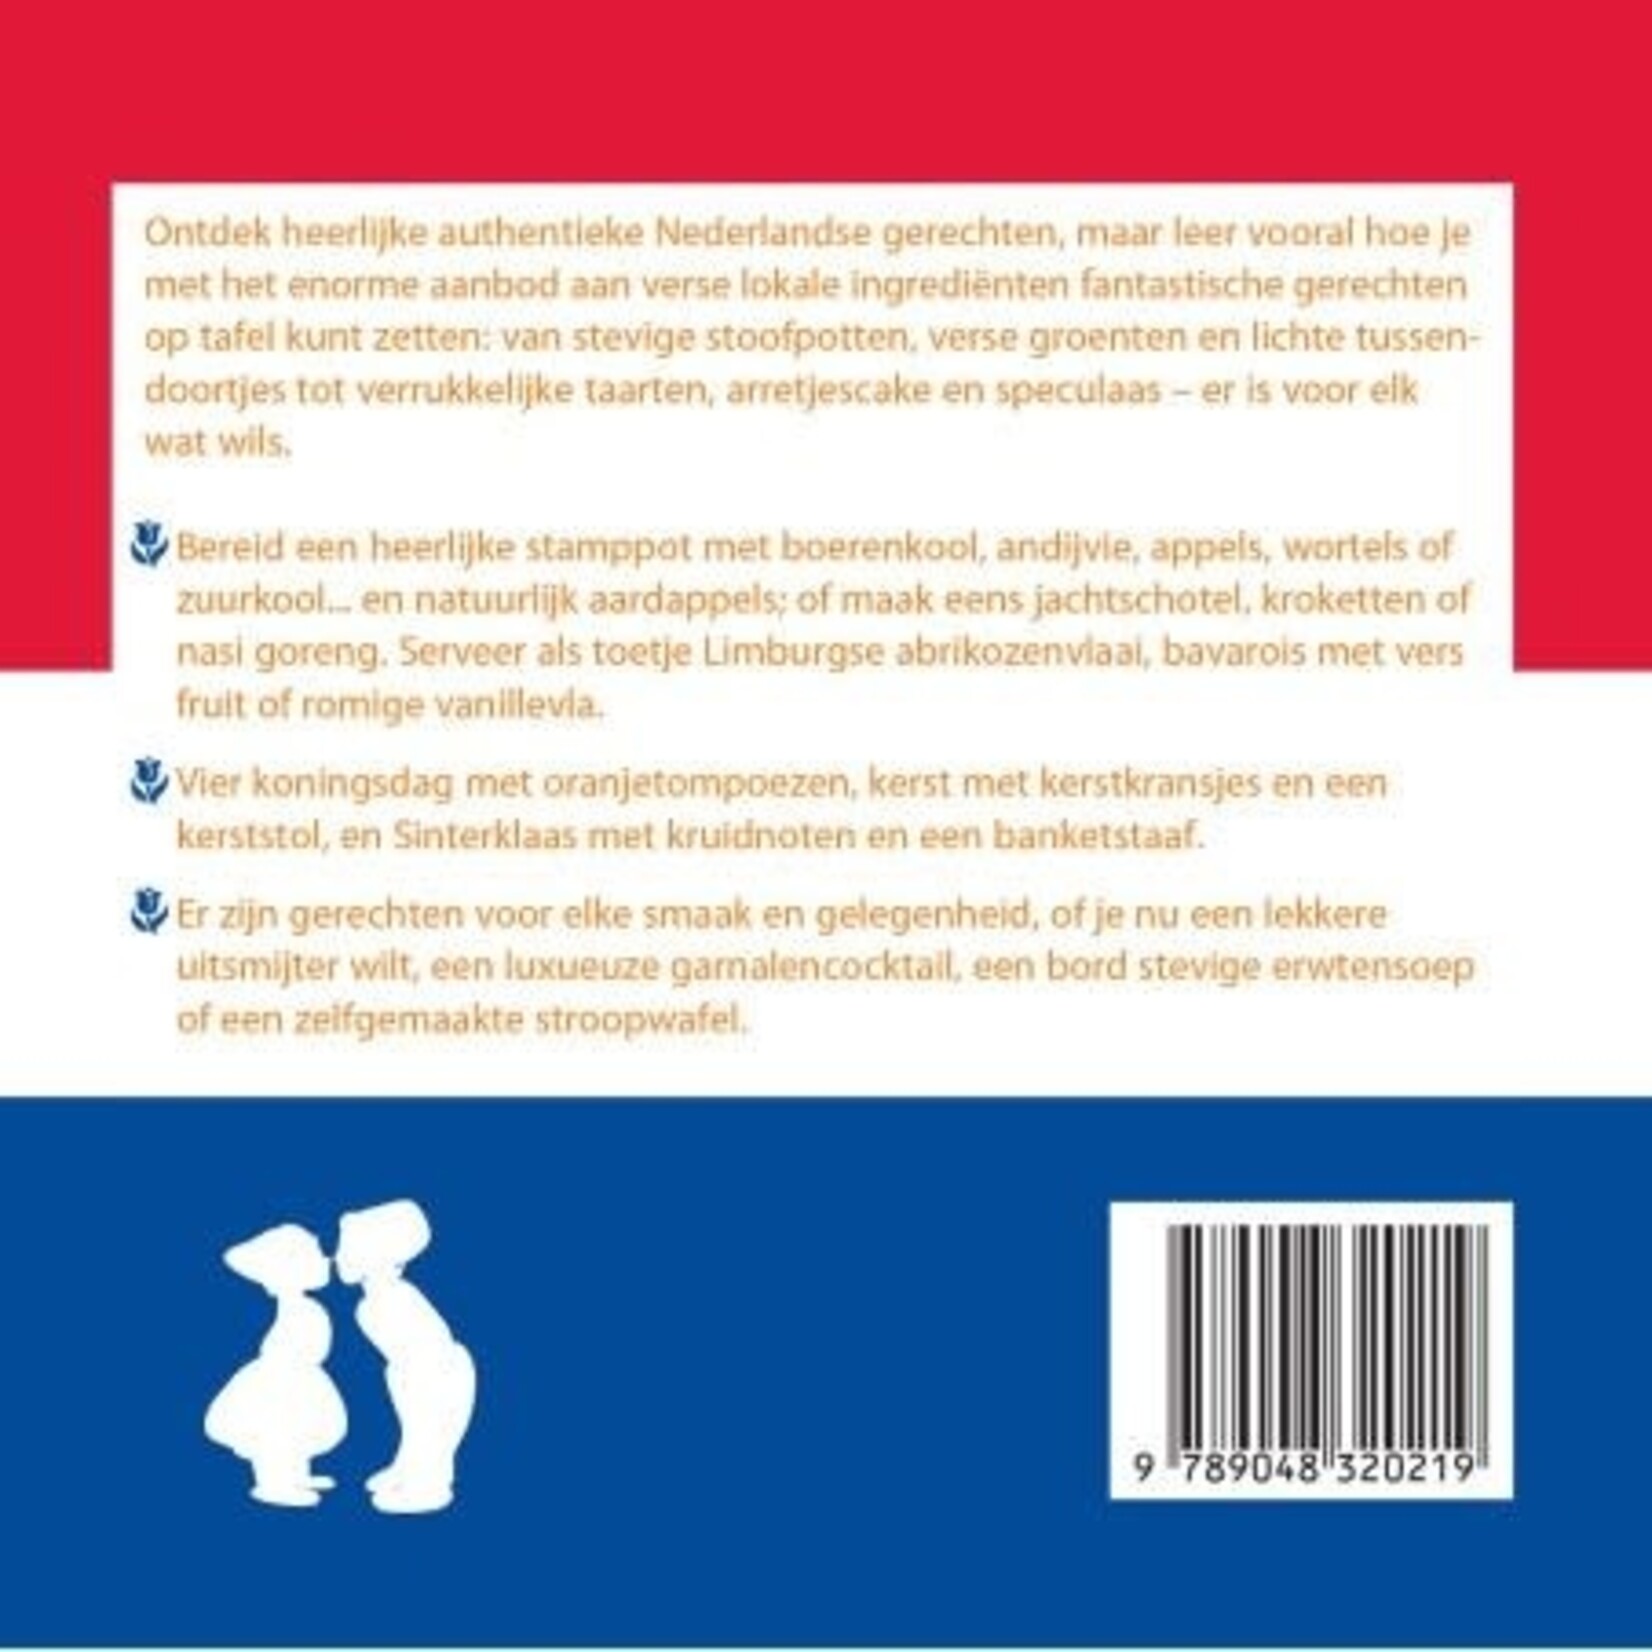 Diverse Merken 500 Nederlandse gerechten Kookboek ISBN 9789048320219